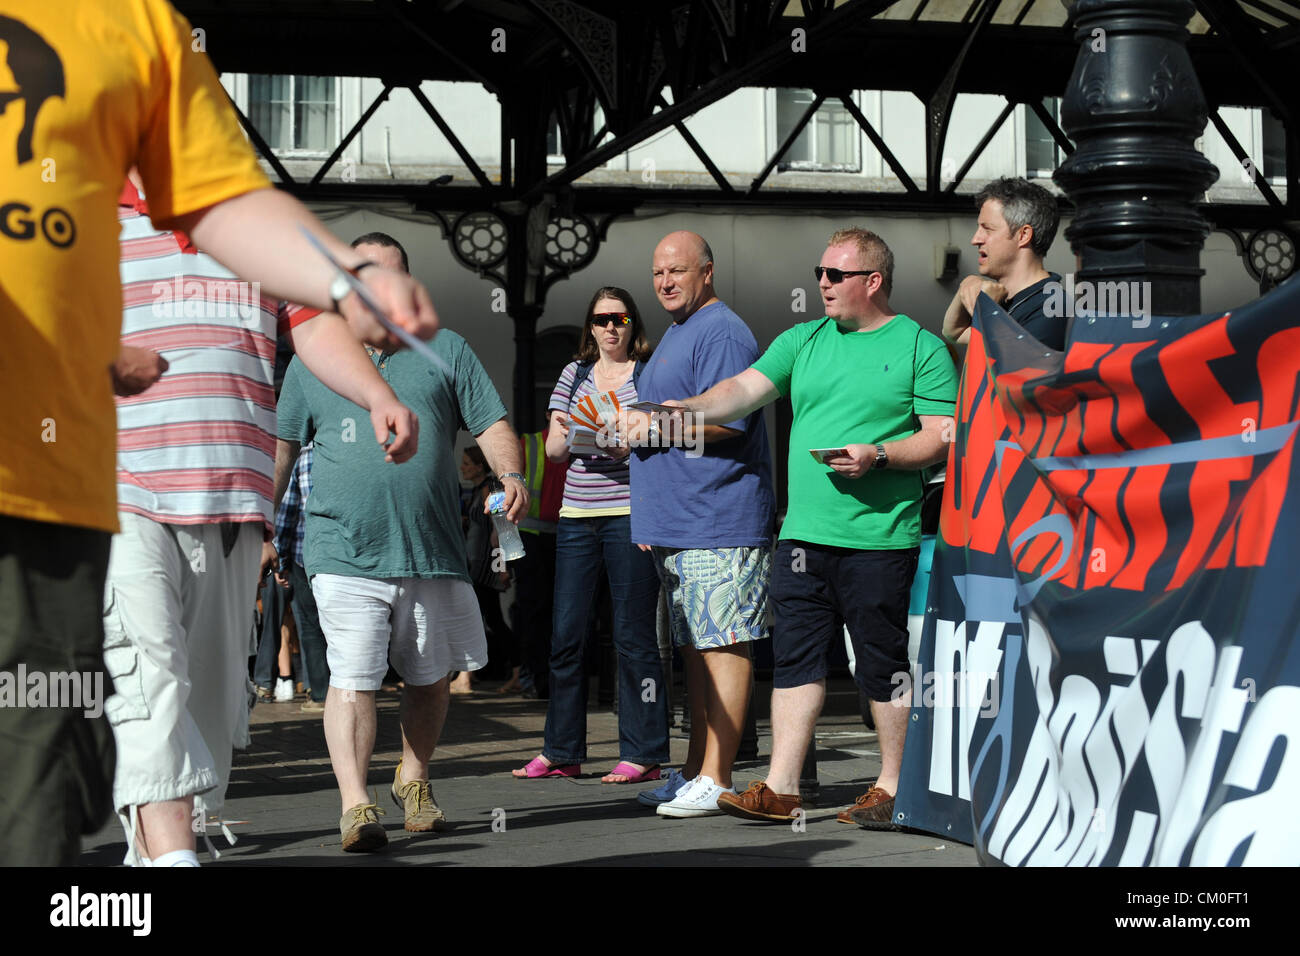 Brighton UK 8 Septembre 2012 - RMT dirigeant syndical Bob Crow (centre en chemise bleue) s'est joint à protester contre les travailleurs des chemins de fer Banque D'Images